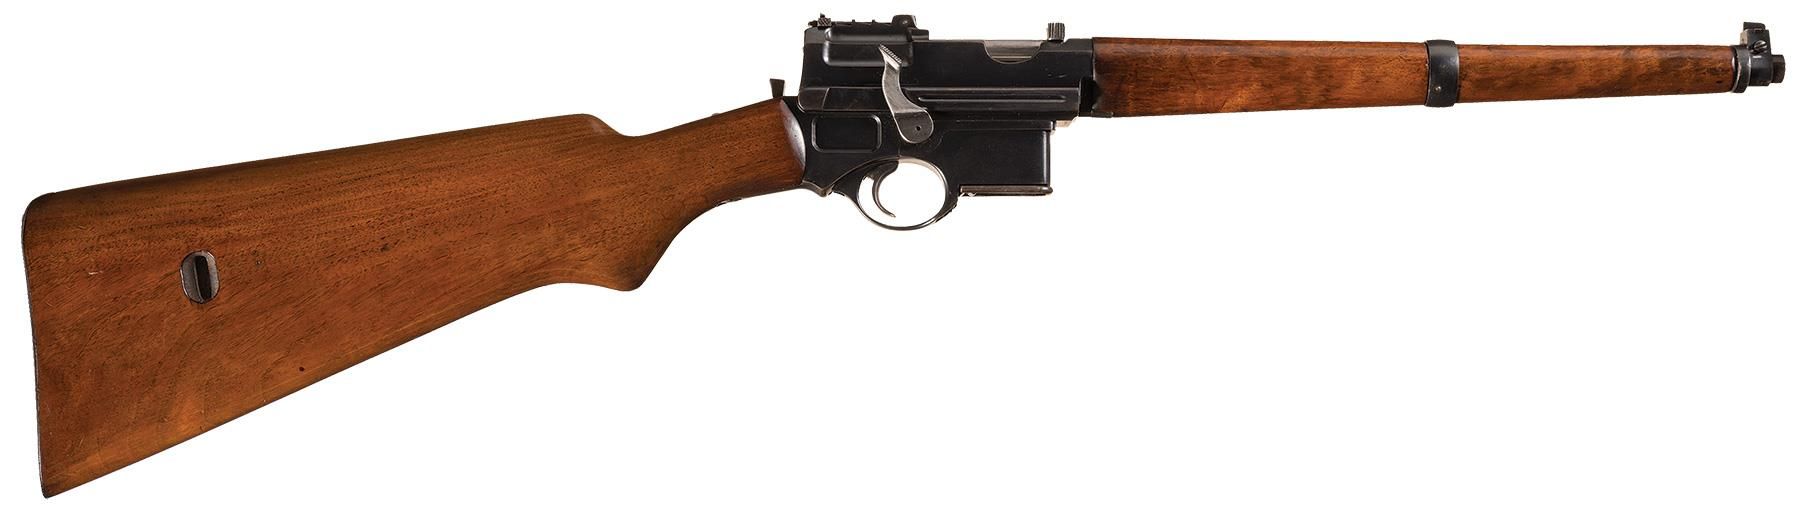 Mannlicher Model 1901 Semi-Automatic Pistol-Carbine